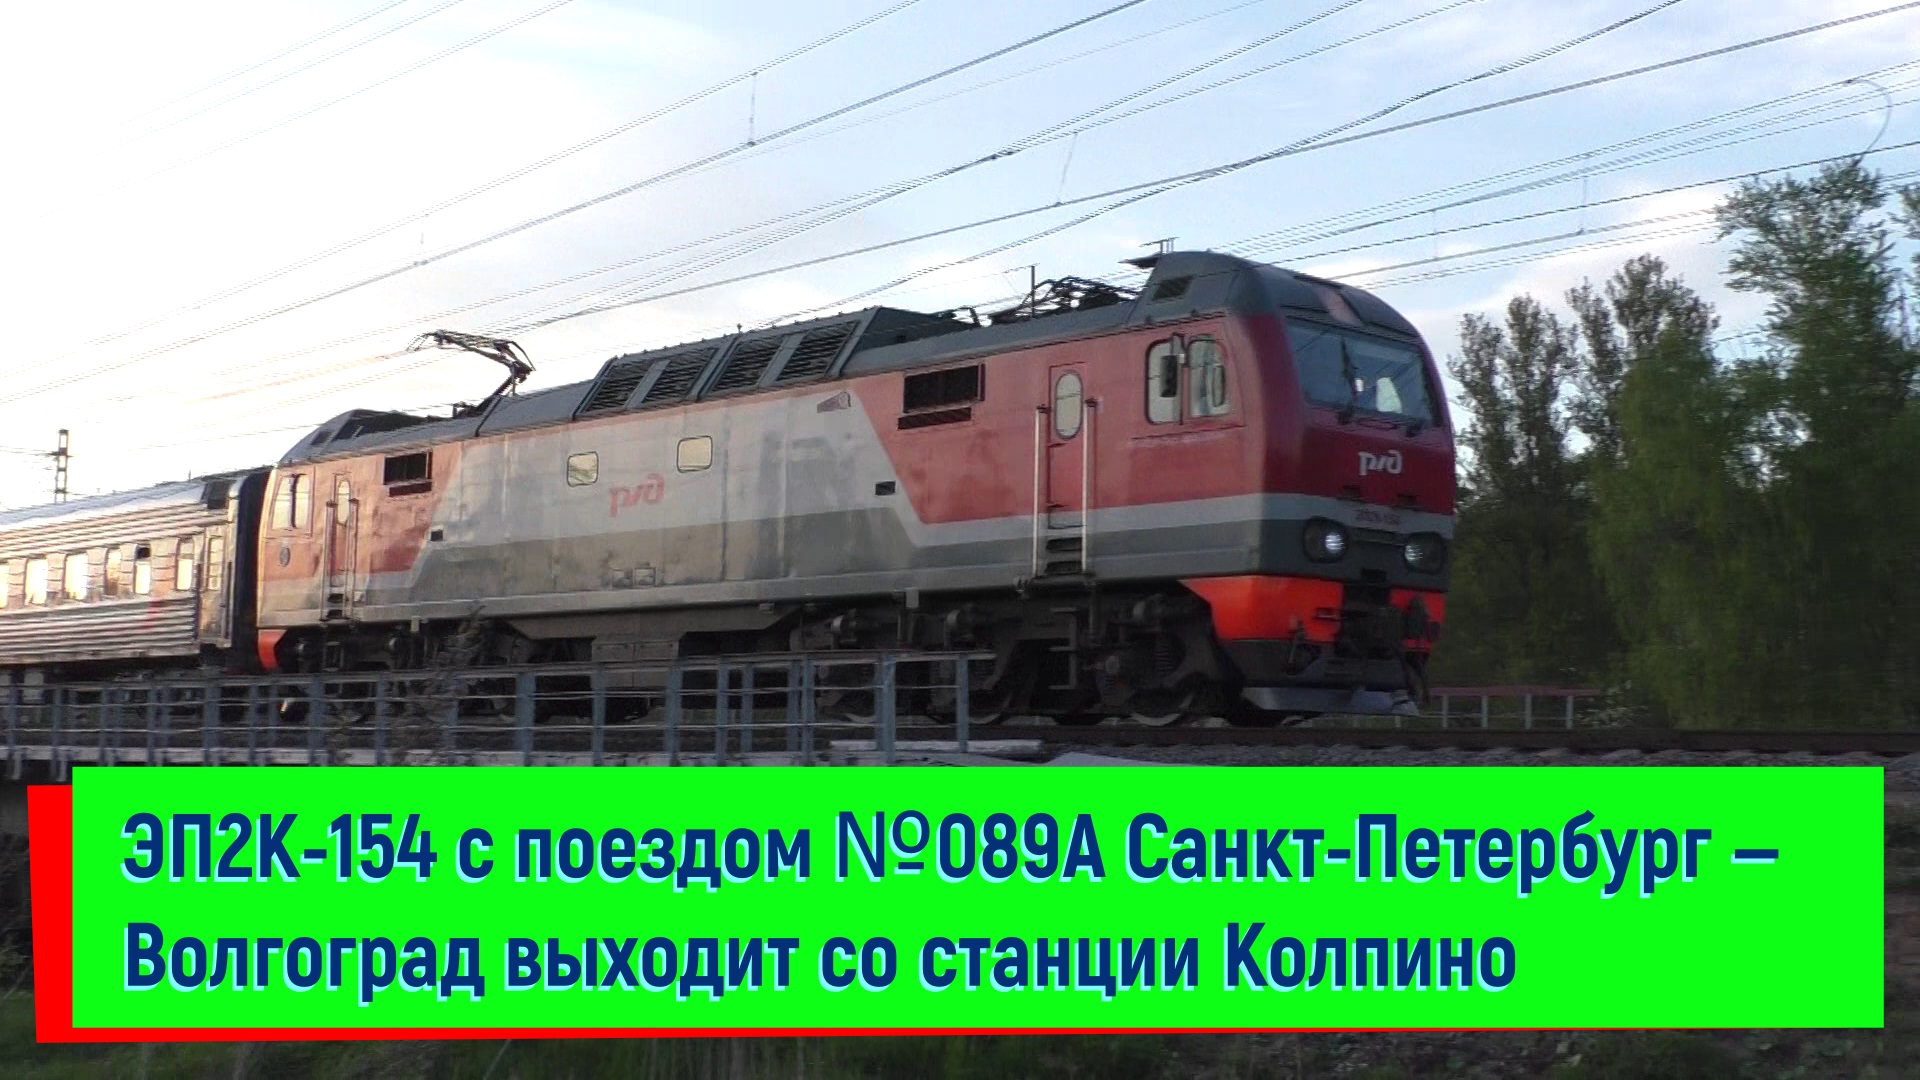 ЭП2К-154 с поездом №089А Санкт-Петербург — Волгоград на станции Колпино | EP2K-154, Kolpino station